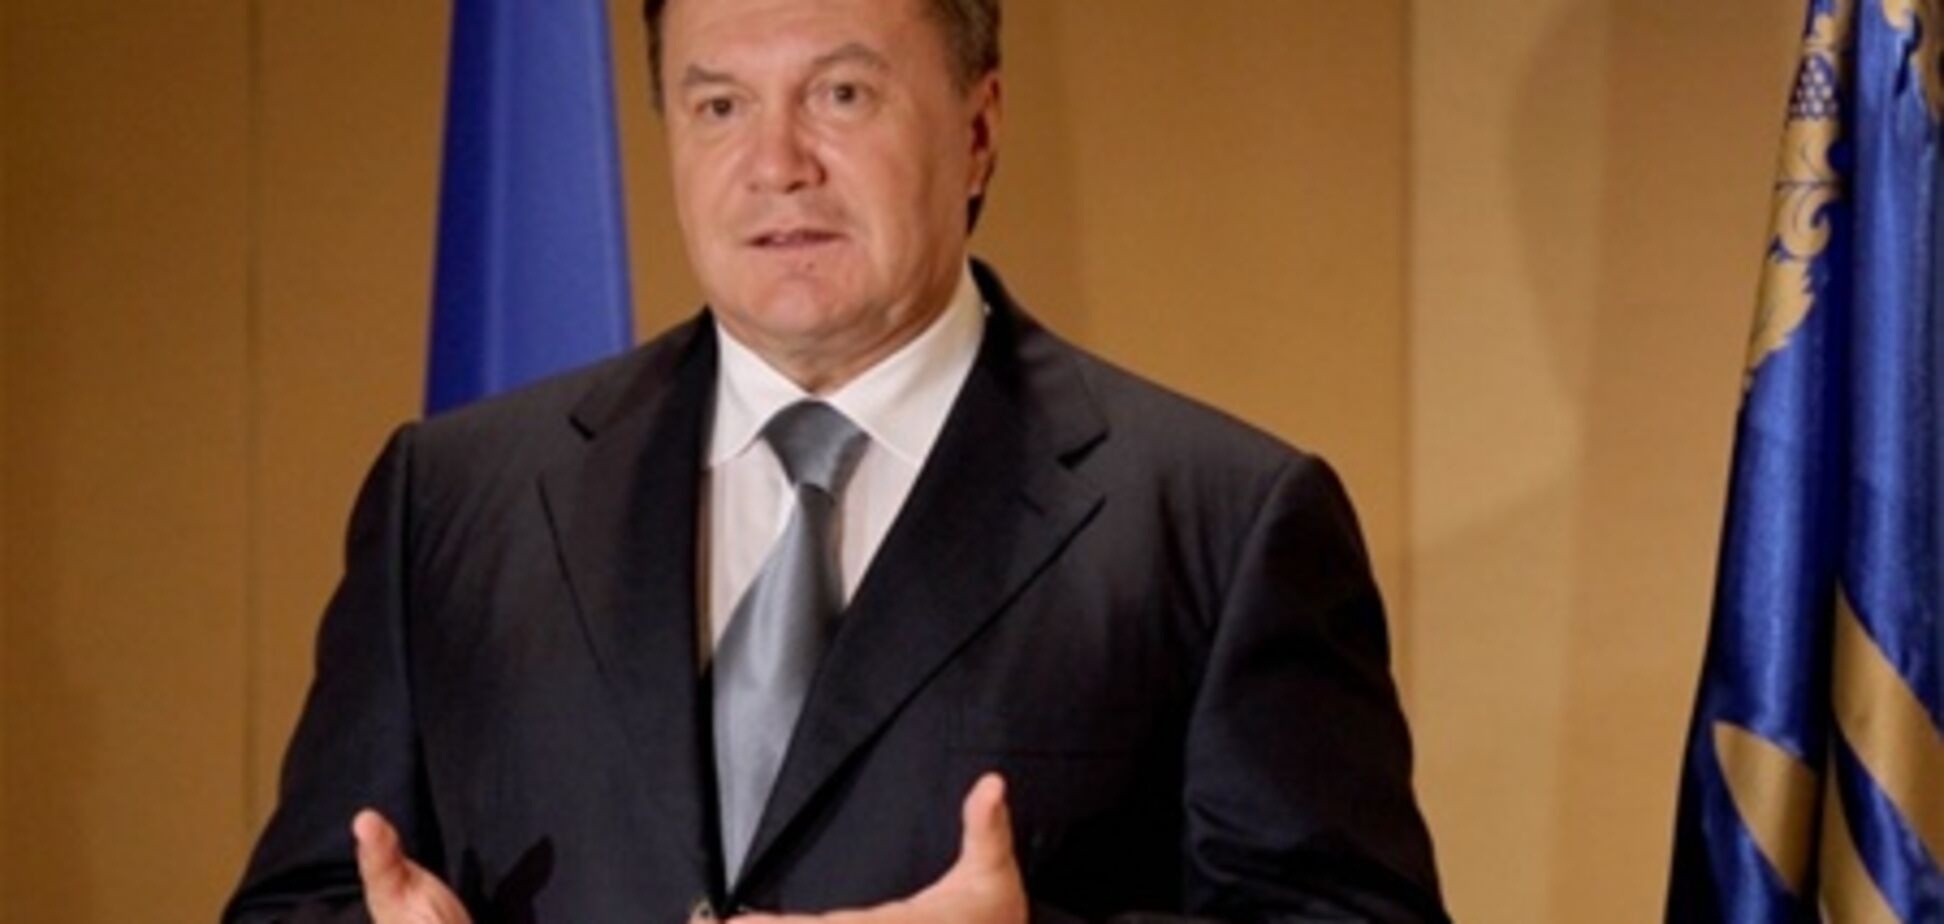 ПР назвала визит Януковича в США знаковым событием